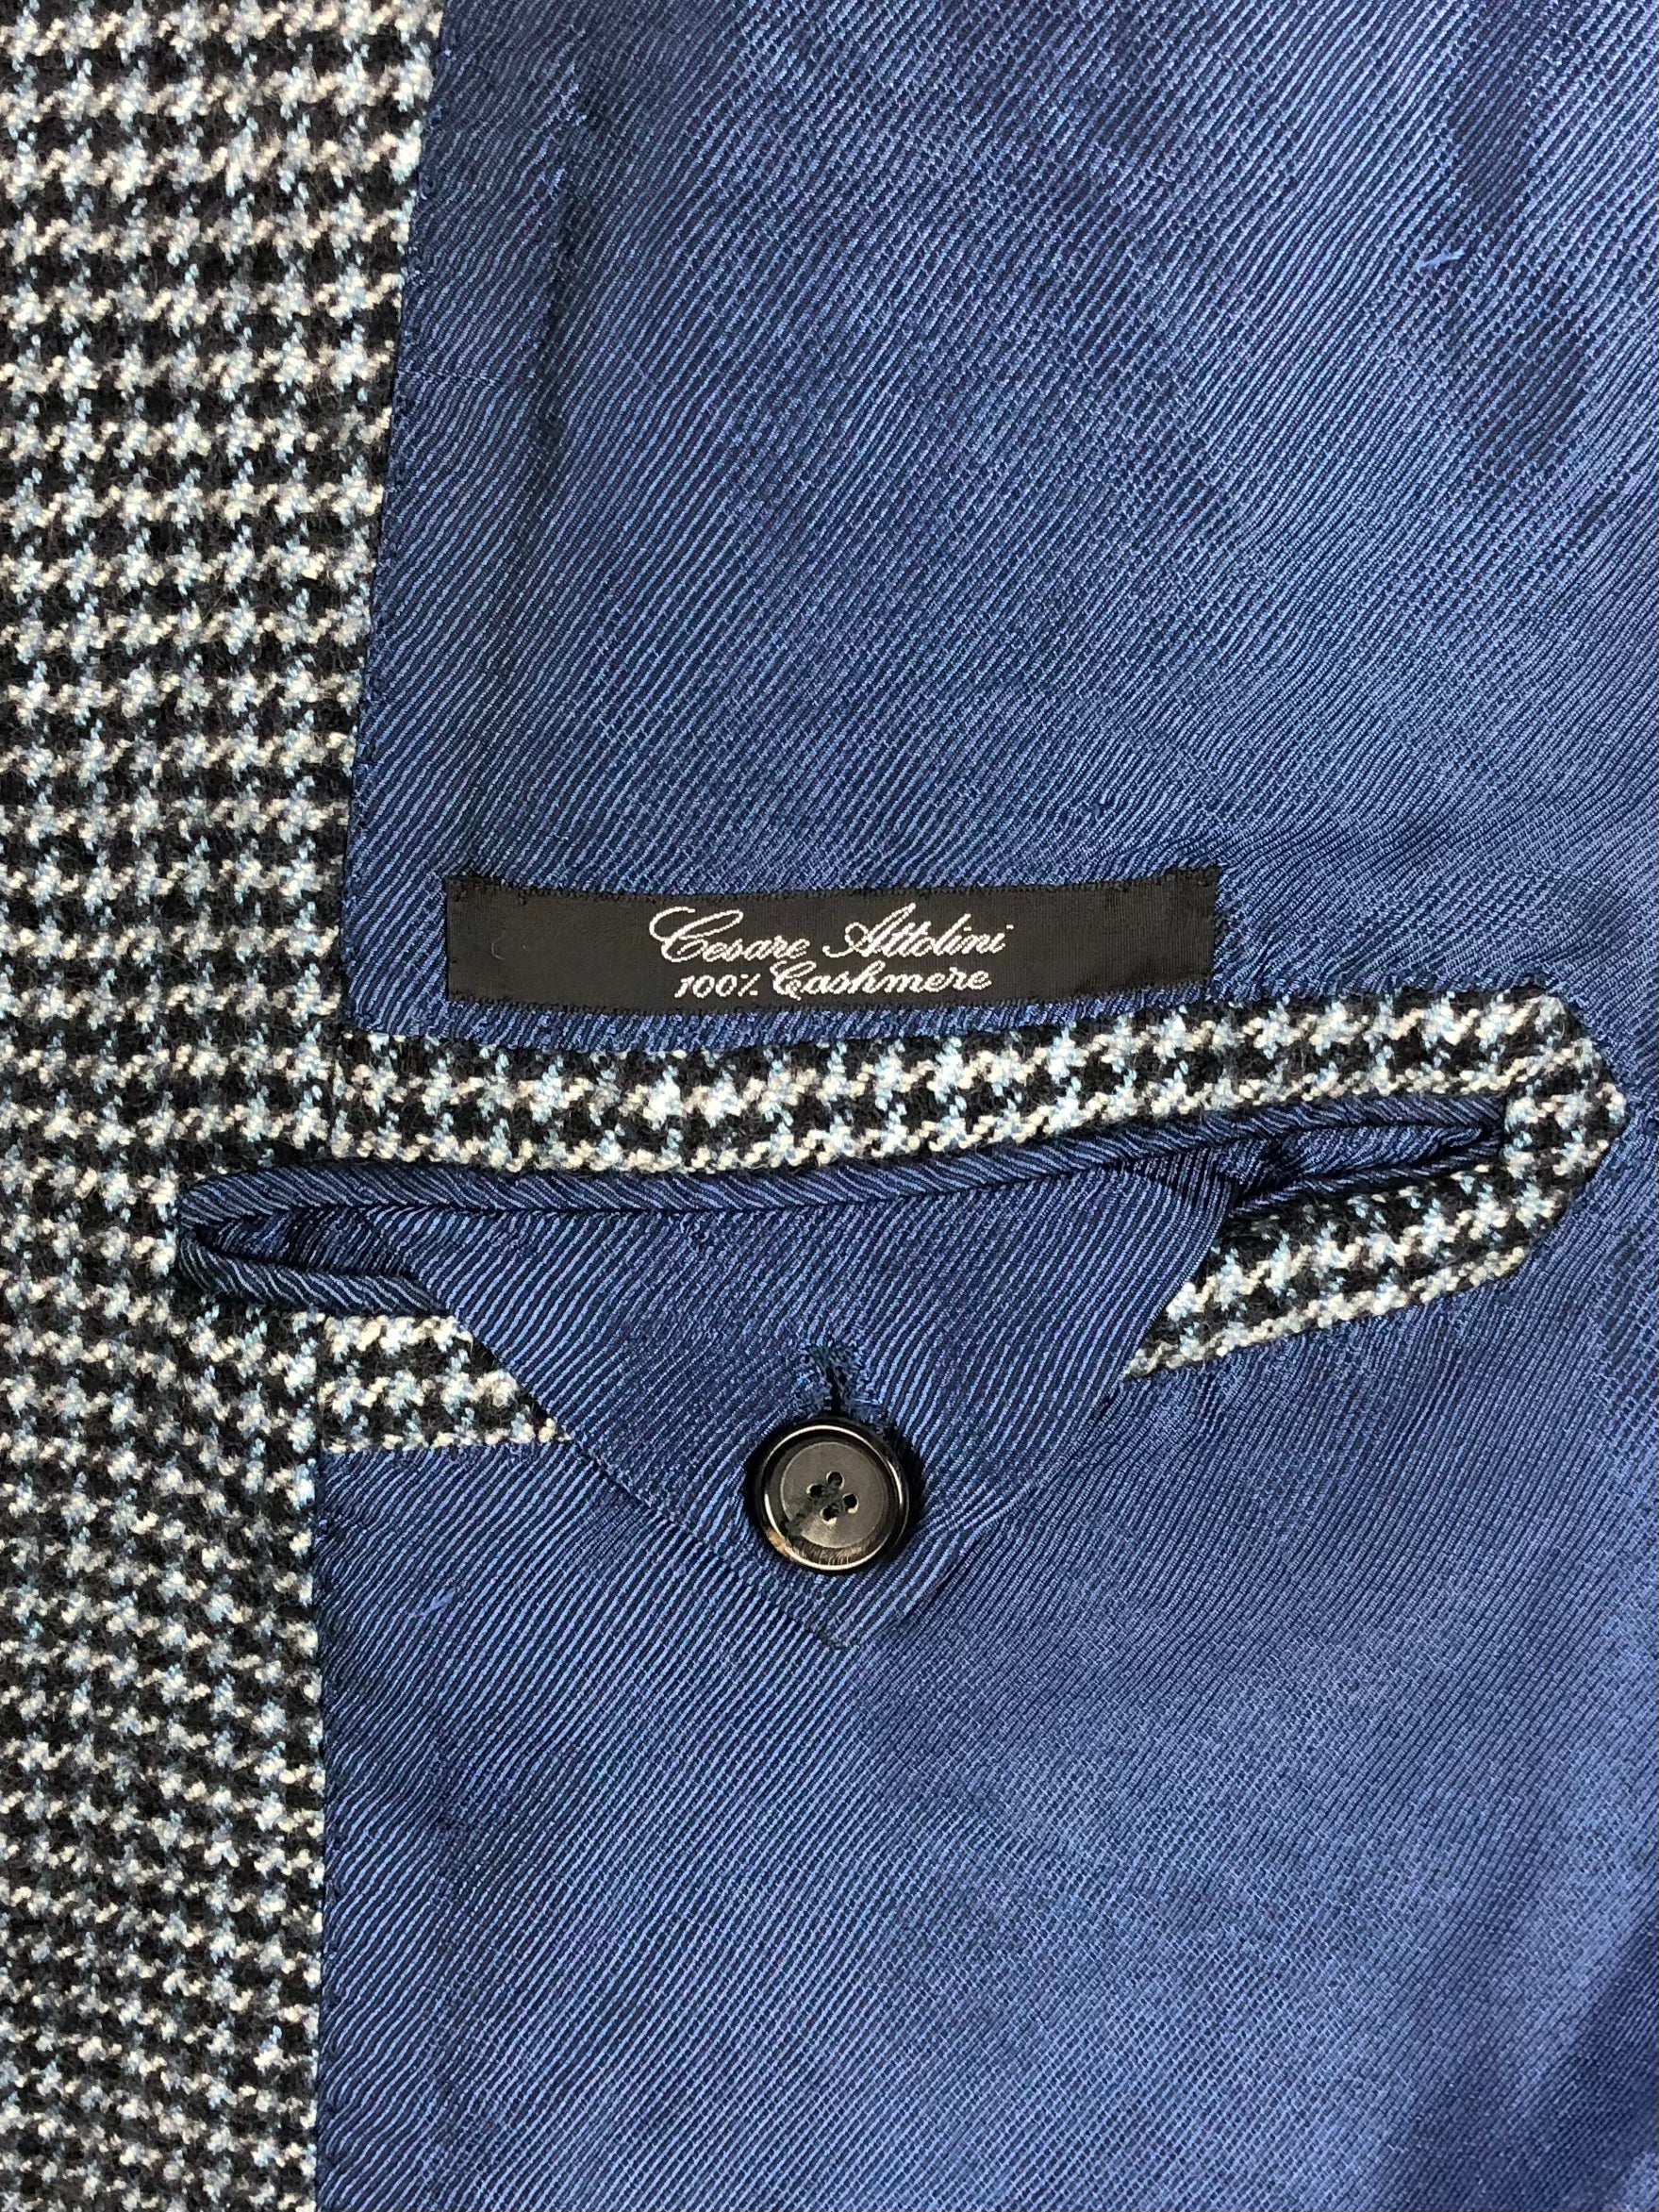 Cesare Attolini Blue Cashmere Jacket